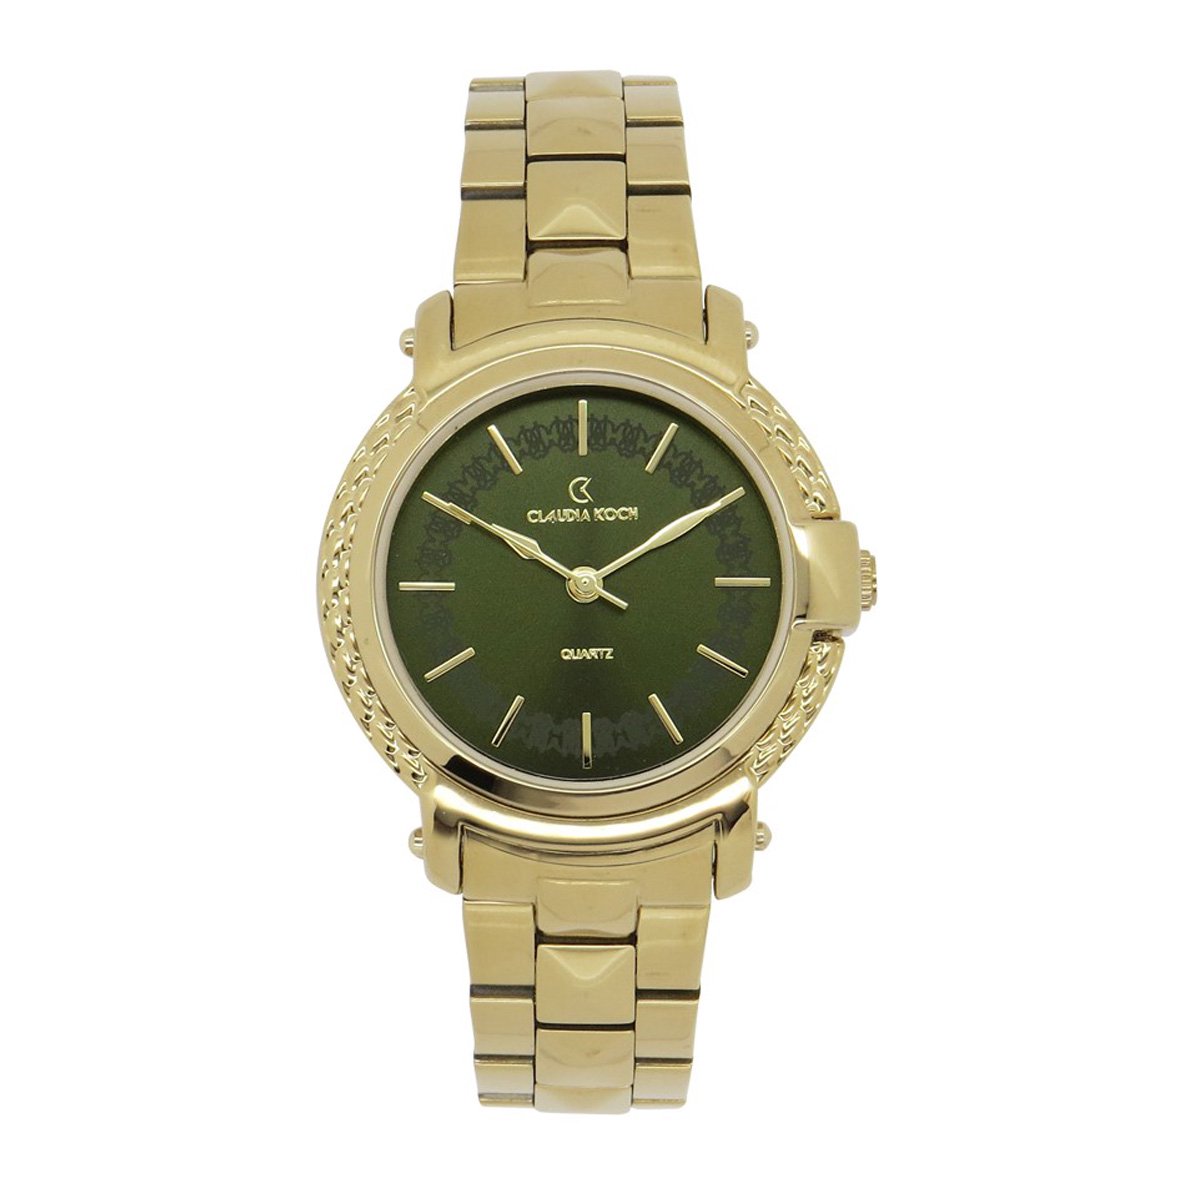 ClaudiaKoch CK 219462 Gold Women Stainless Steel Analog watch